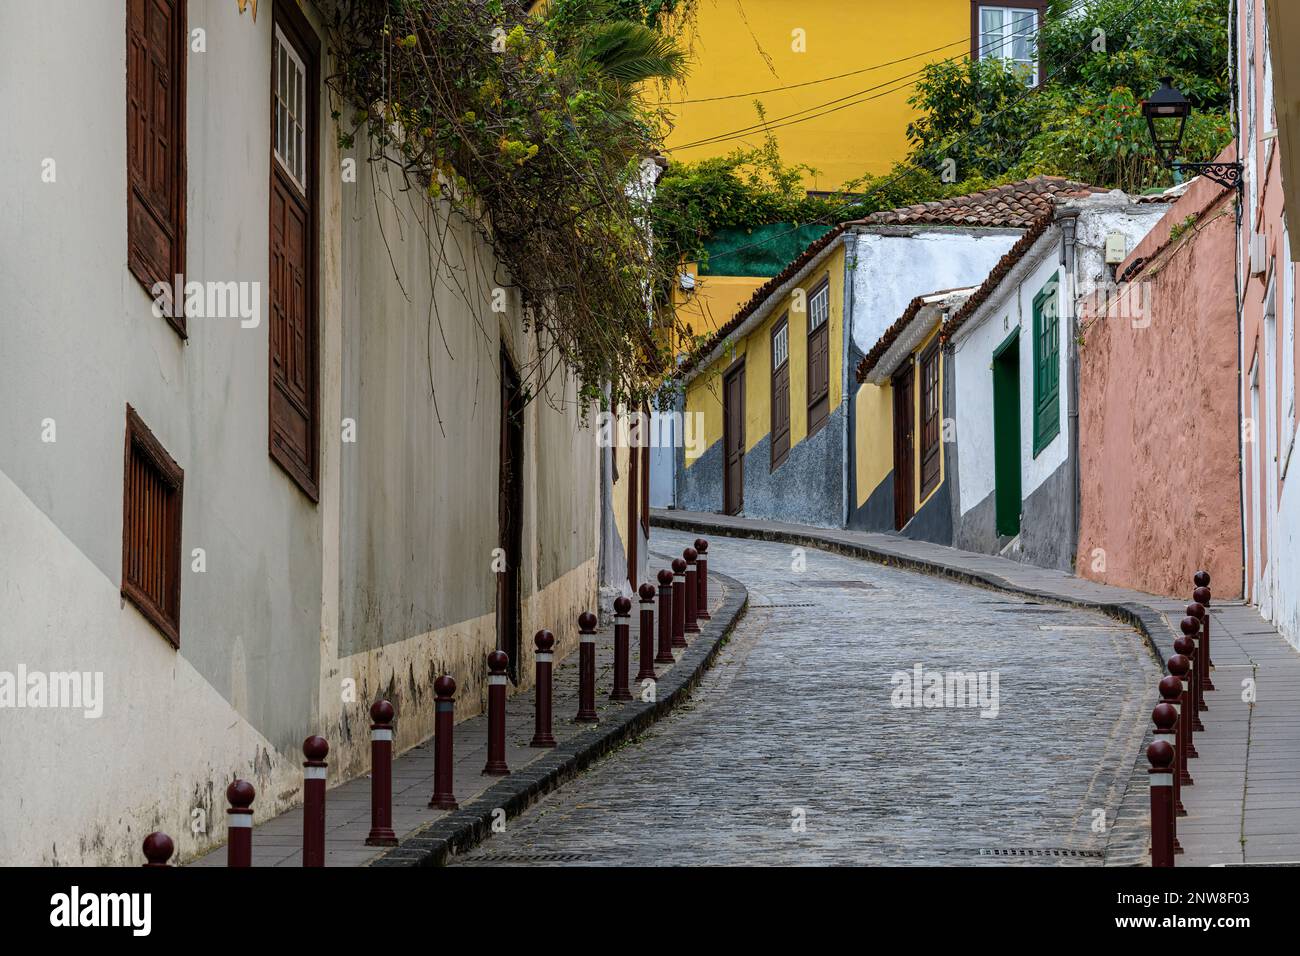 Die enge, gewundene Calle San Juan in La Orotave, Teneriffa, mit ihren Kopfsteinpflastern, farbenfrohen Gebäuden und grüner Vegetation. Stockfoto